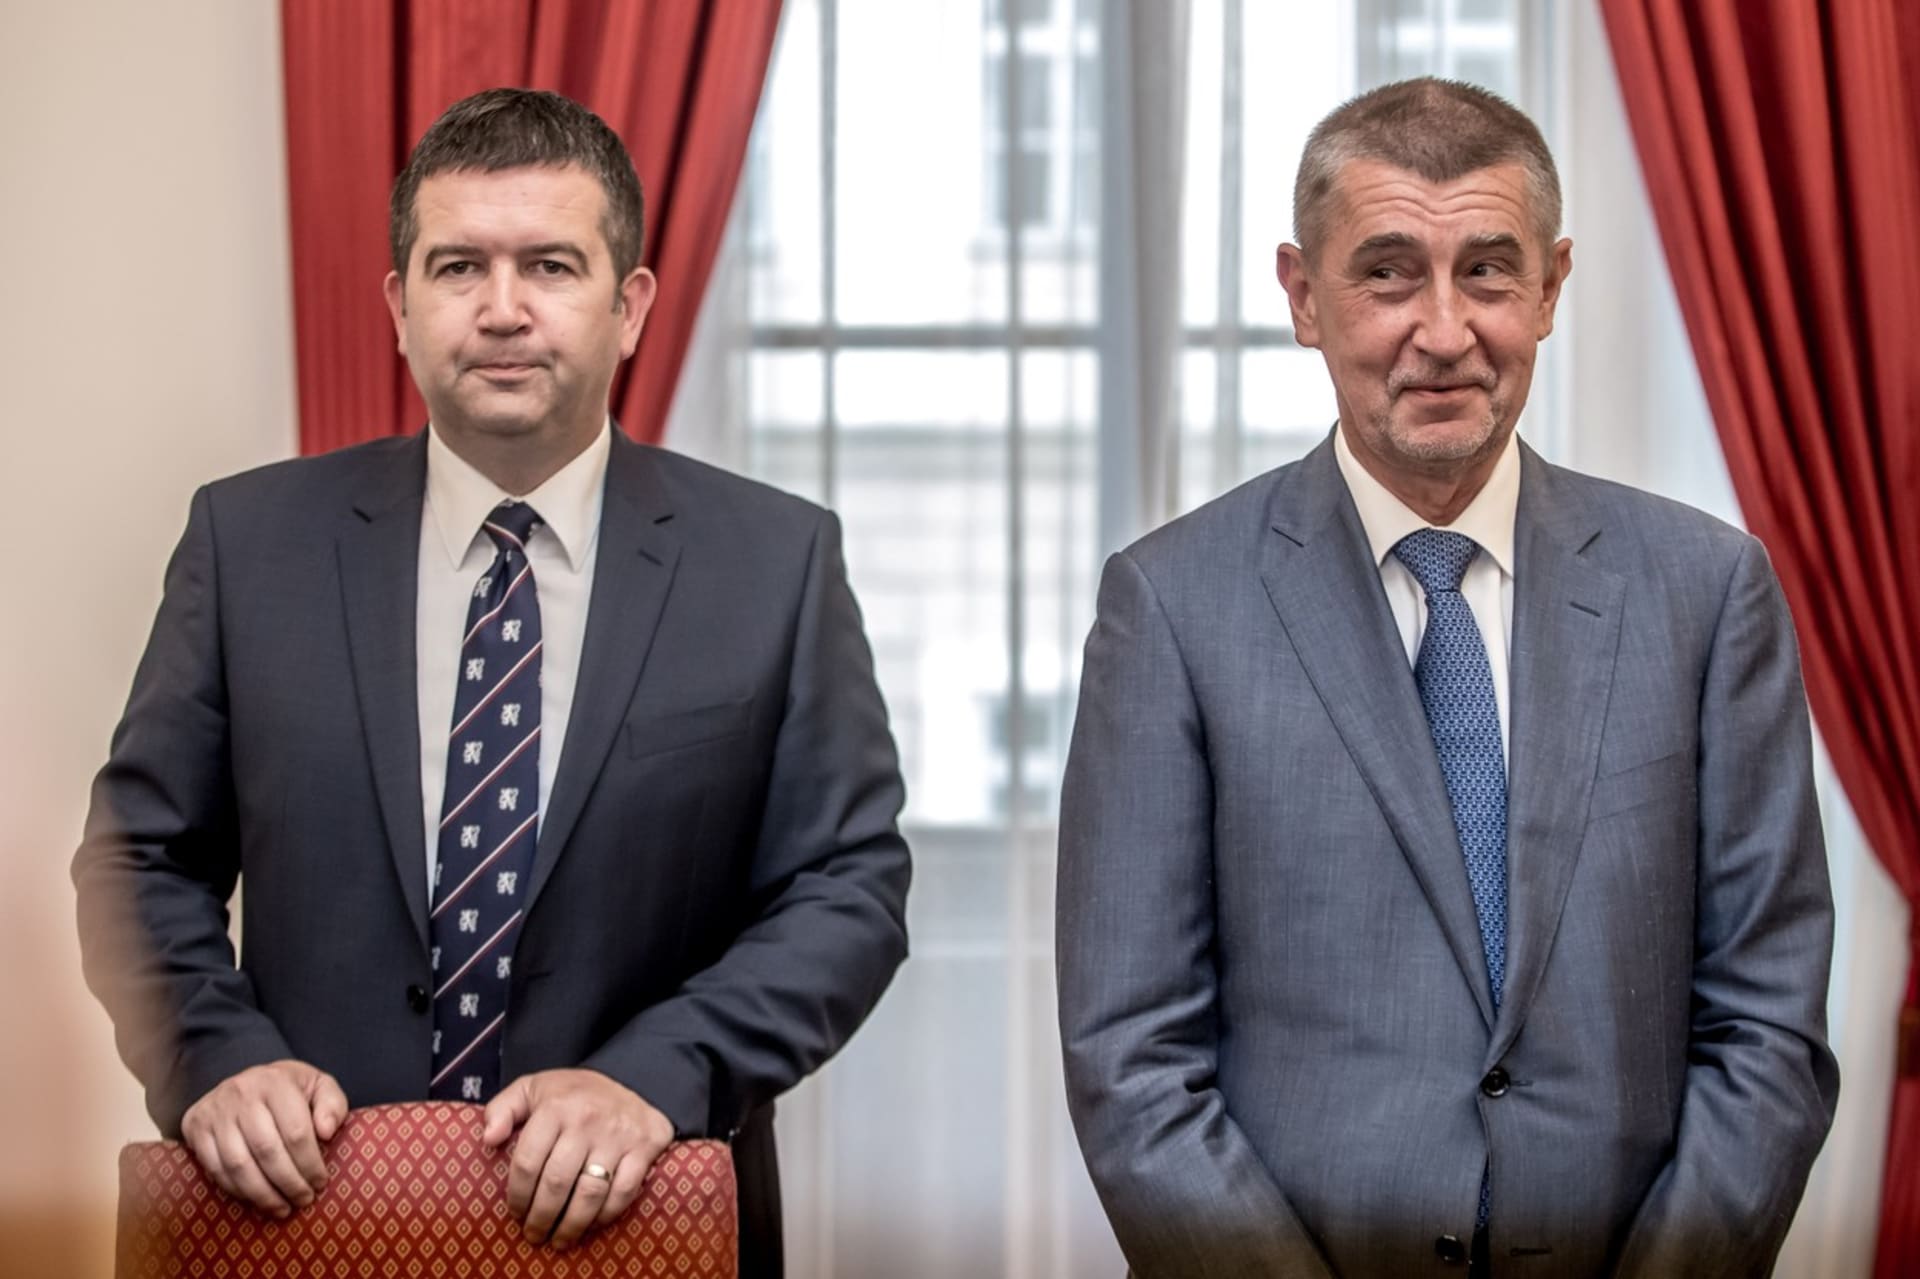 Premiér Andrej Babiš (ANO) na přímý dotaz předsedkyně TOP 09 Markéty Pekarové Adamové, zda věří ministru vnitra Janu Hamáčkovi v souvislosti s kauzou Vrbětice, neodpověděl jasně. 